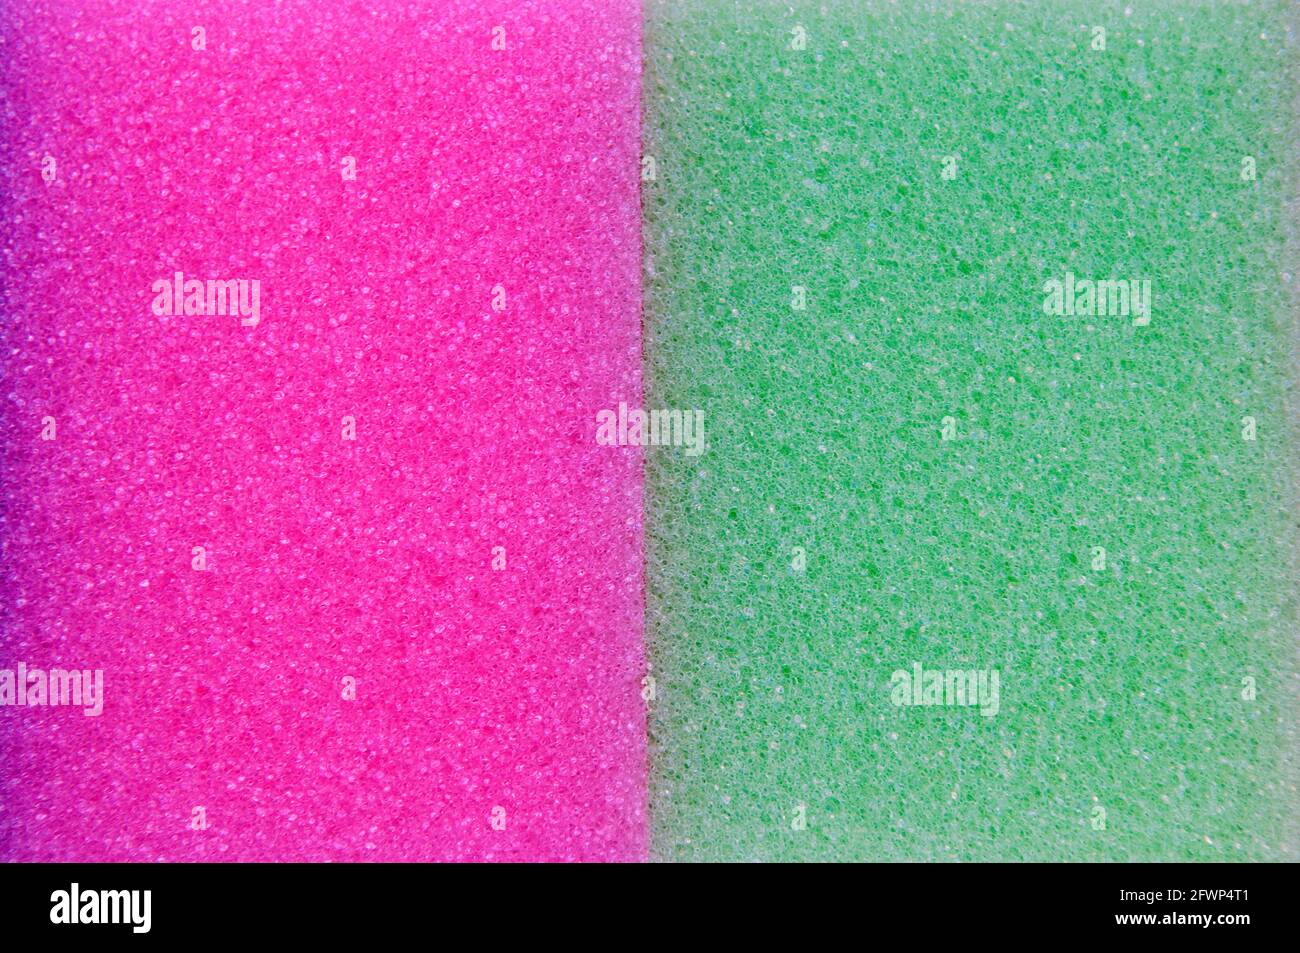 Ein Nahaufnahme von zwei Waschschwämmen, einem Pink und einem Grün, nebeneinander Stockfoto